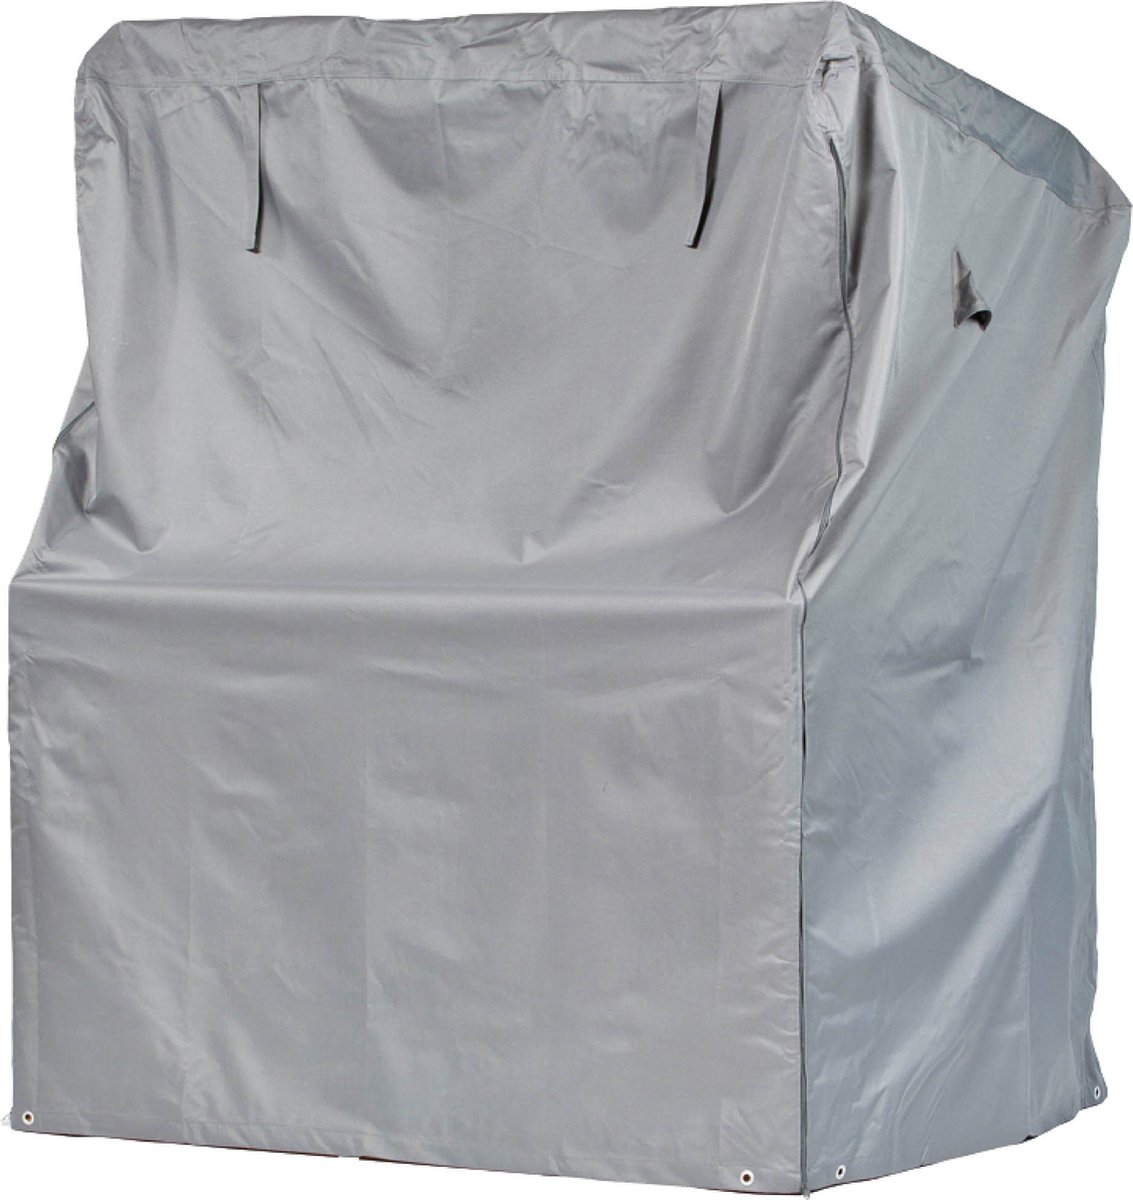 Beschermhoes voor strandstoel | 125 x 100 x 165/140 cm | polyesterweefsel van het type Oxford 600D, kleur: grijs.